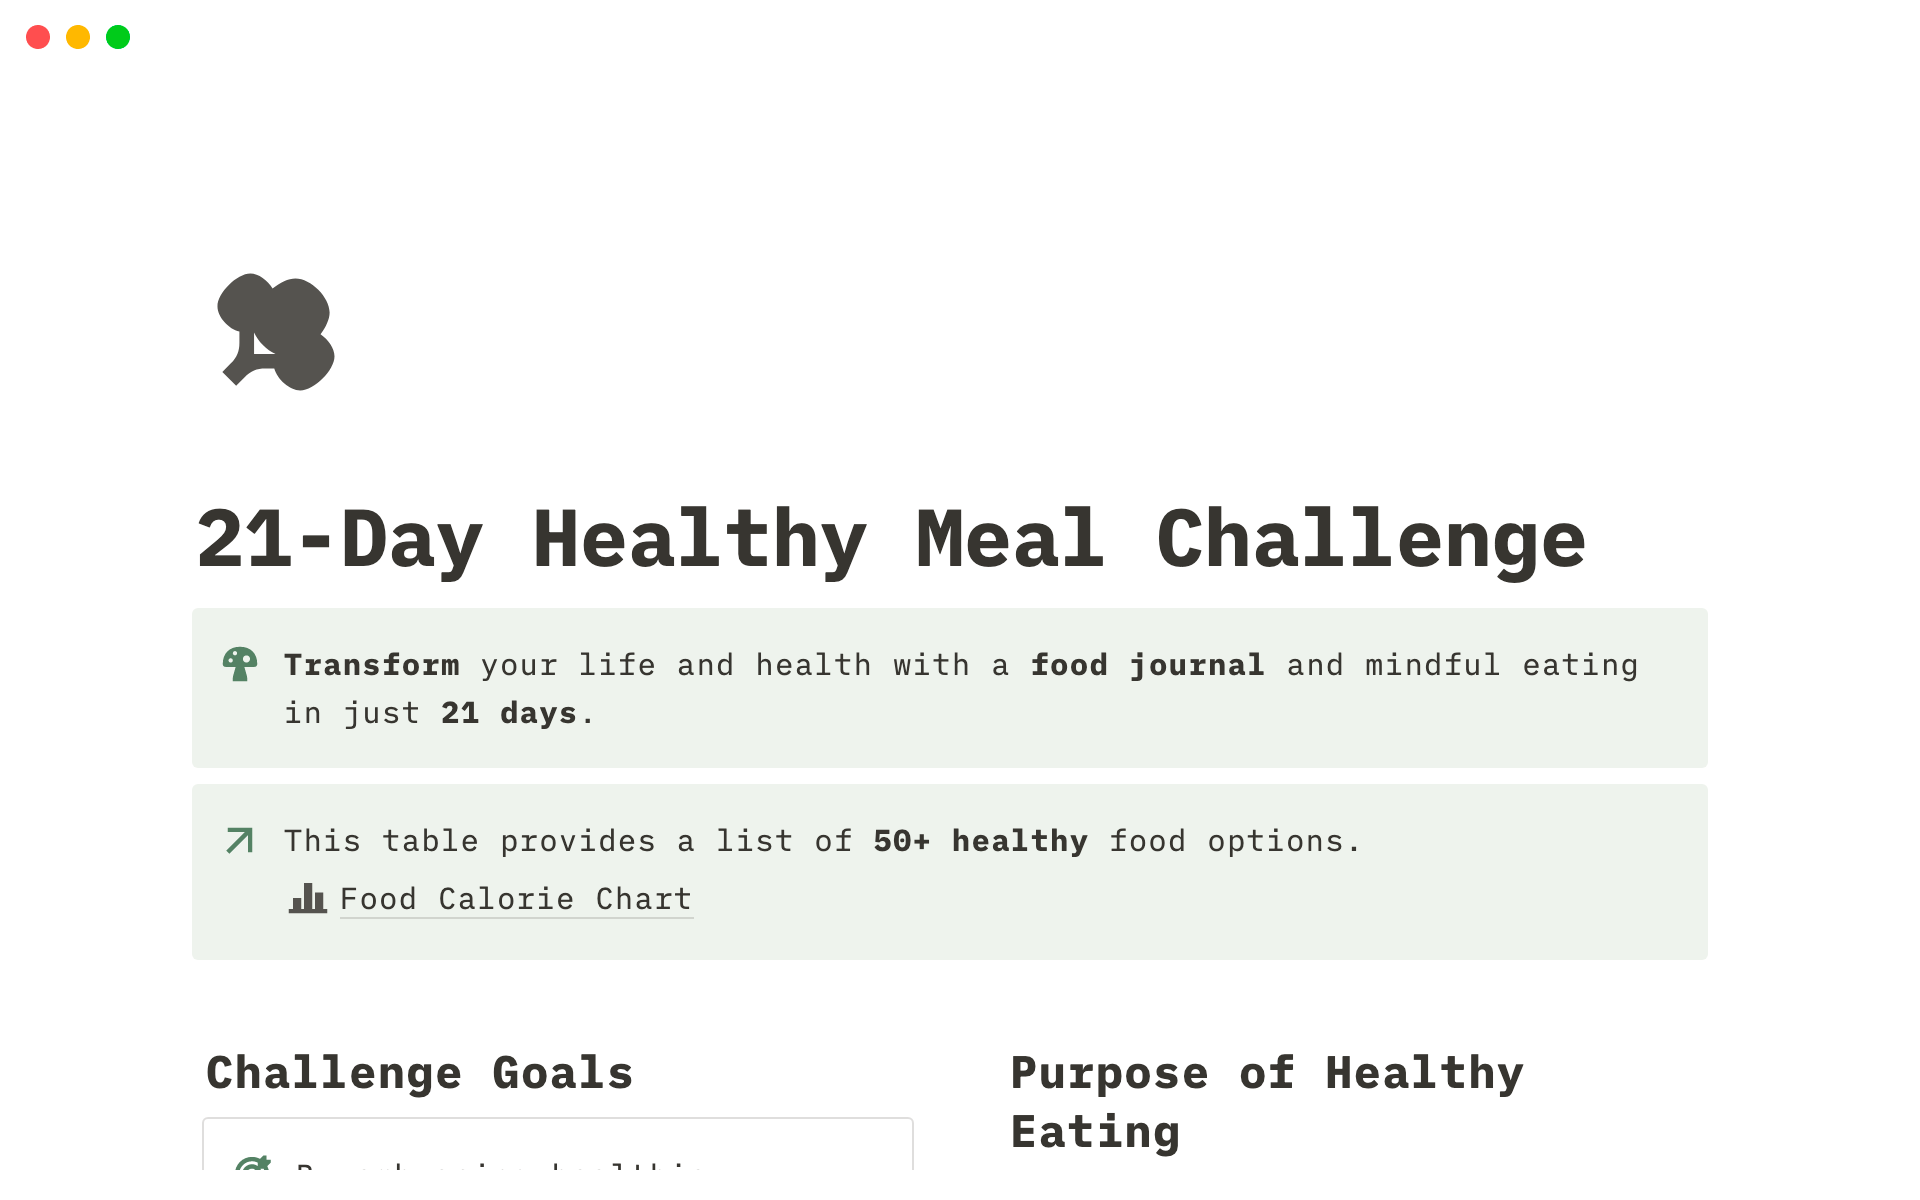 https://images.ctfassets.net/spoqsaf9291f/2mRkShHWND60i5nN9BNGLb/650da135e5060794a0e58b220a21e45c/21-day-healthy-meal-challenge-notion-gags-desktop.png